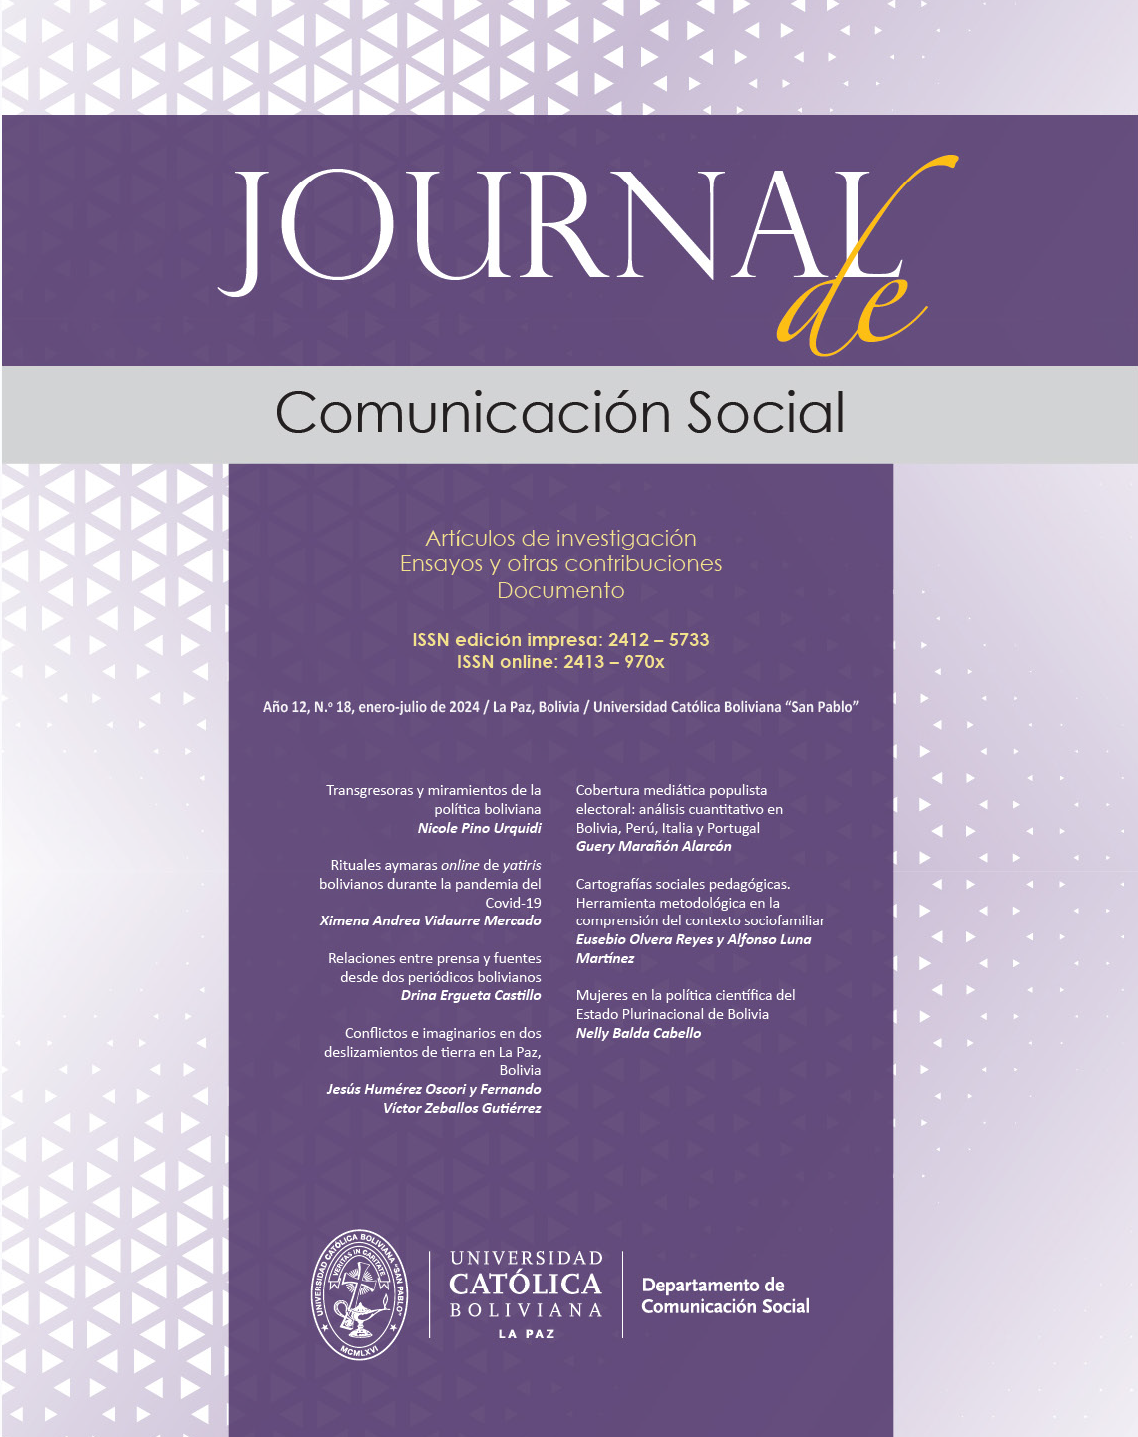 Journal de Comunicación Social